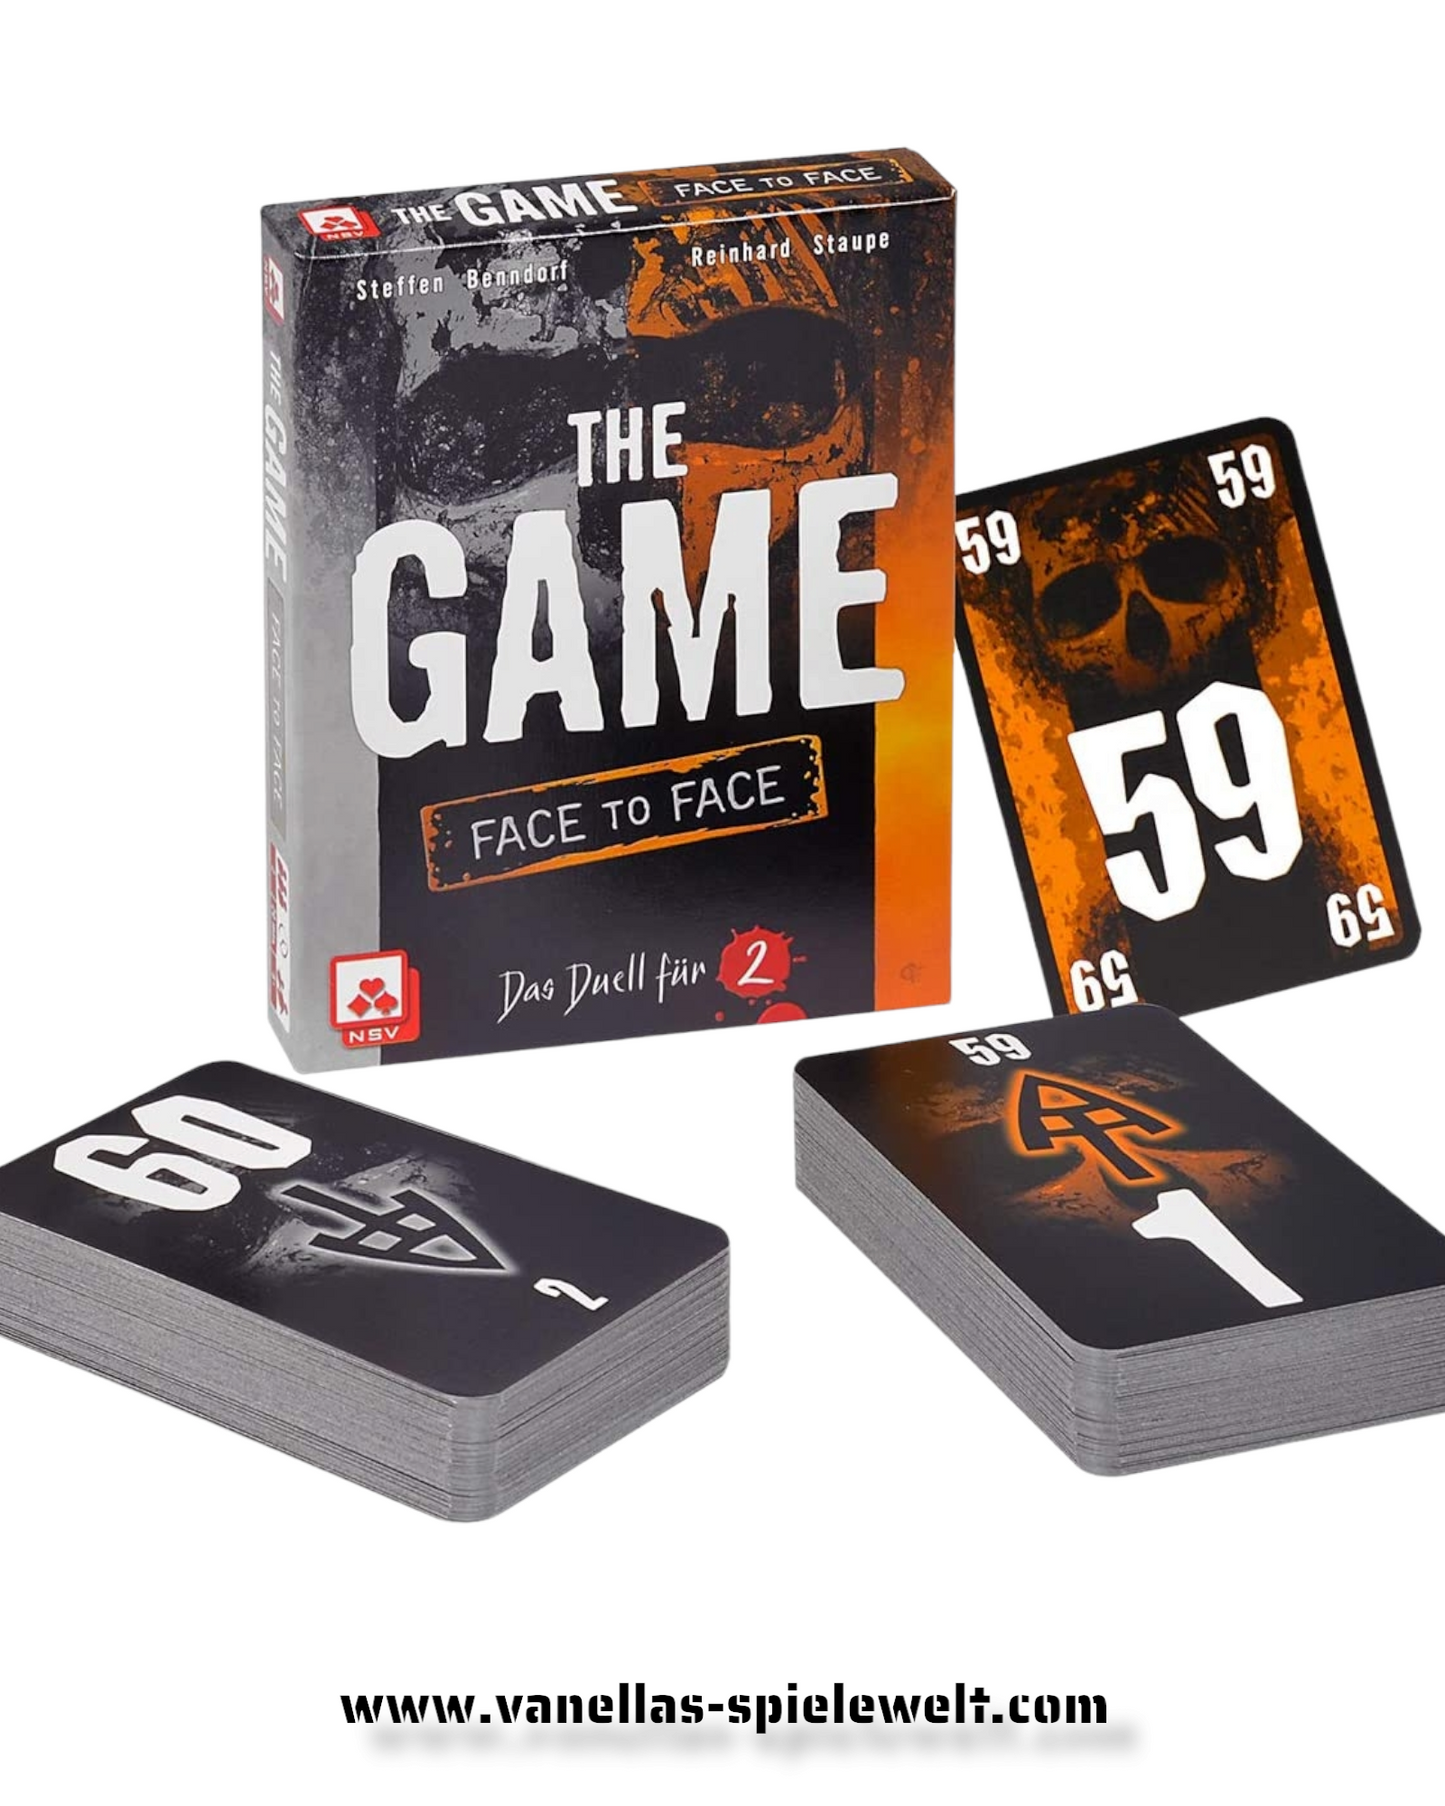 Spielkarten - The Game Face to Face Vanellas Spielewelt